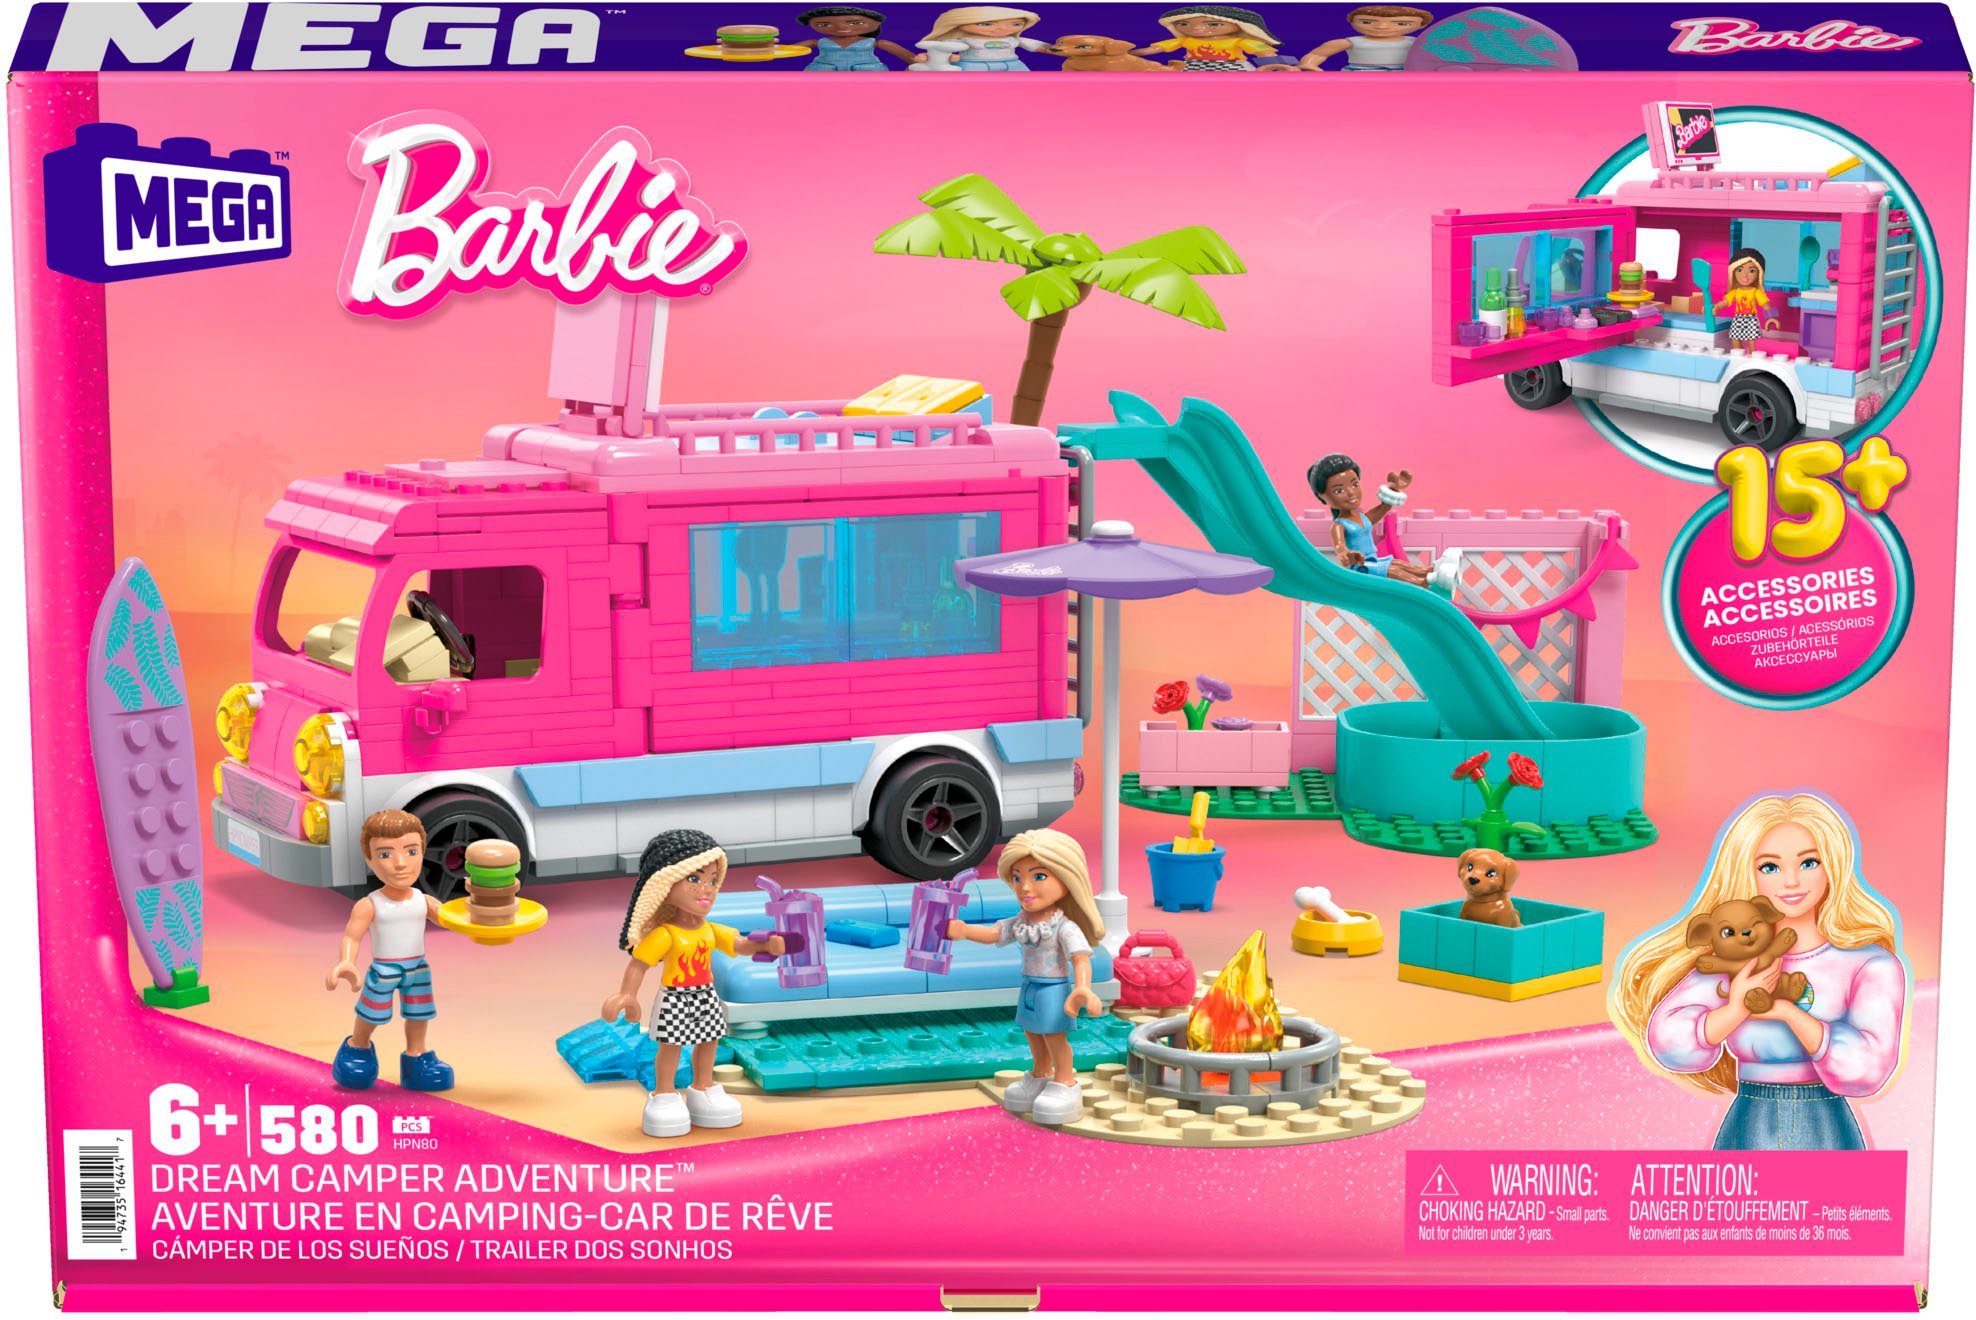 Barbie MEGA Super Adventure Camper